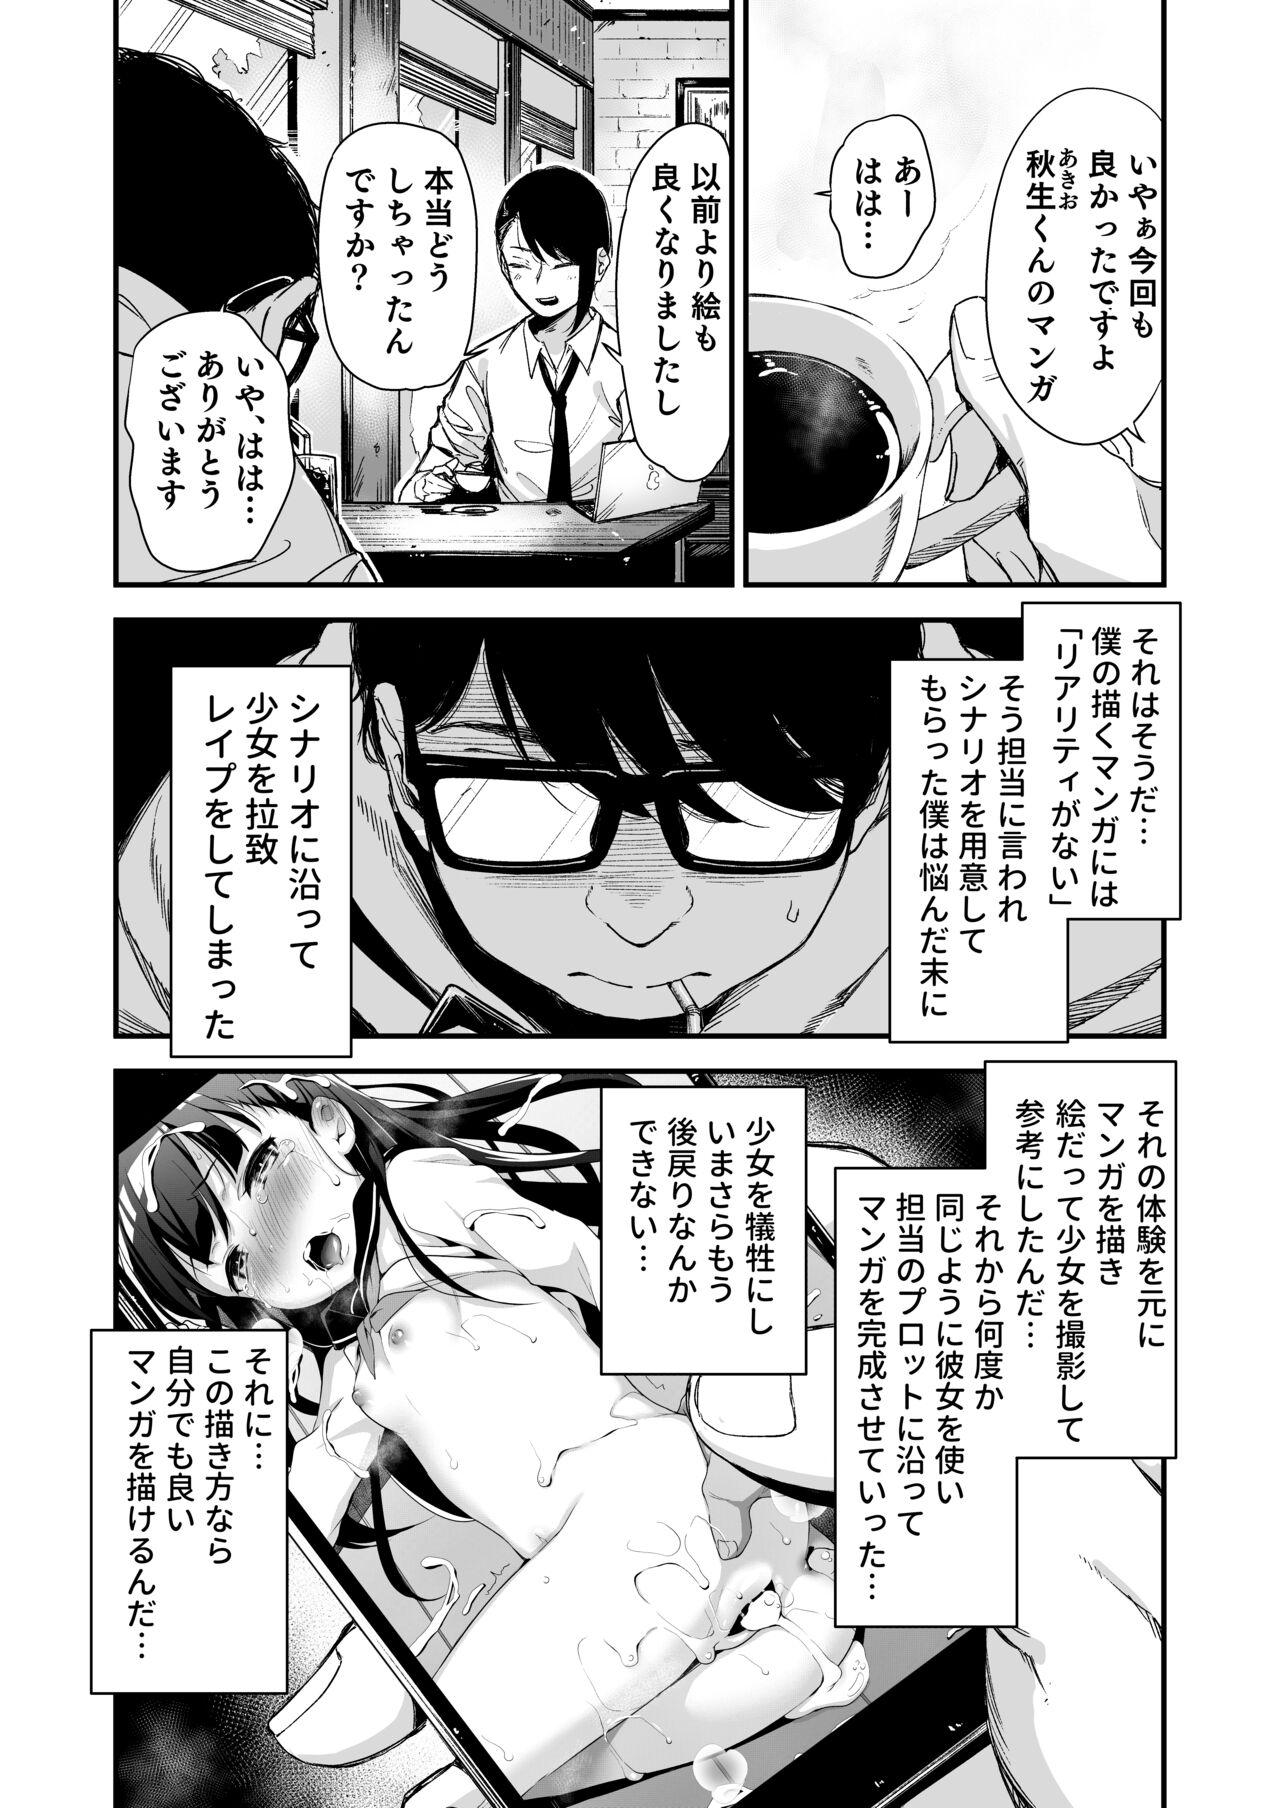 Do-M Shoujo wa, Manga no Naka de. 4